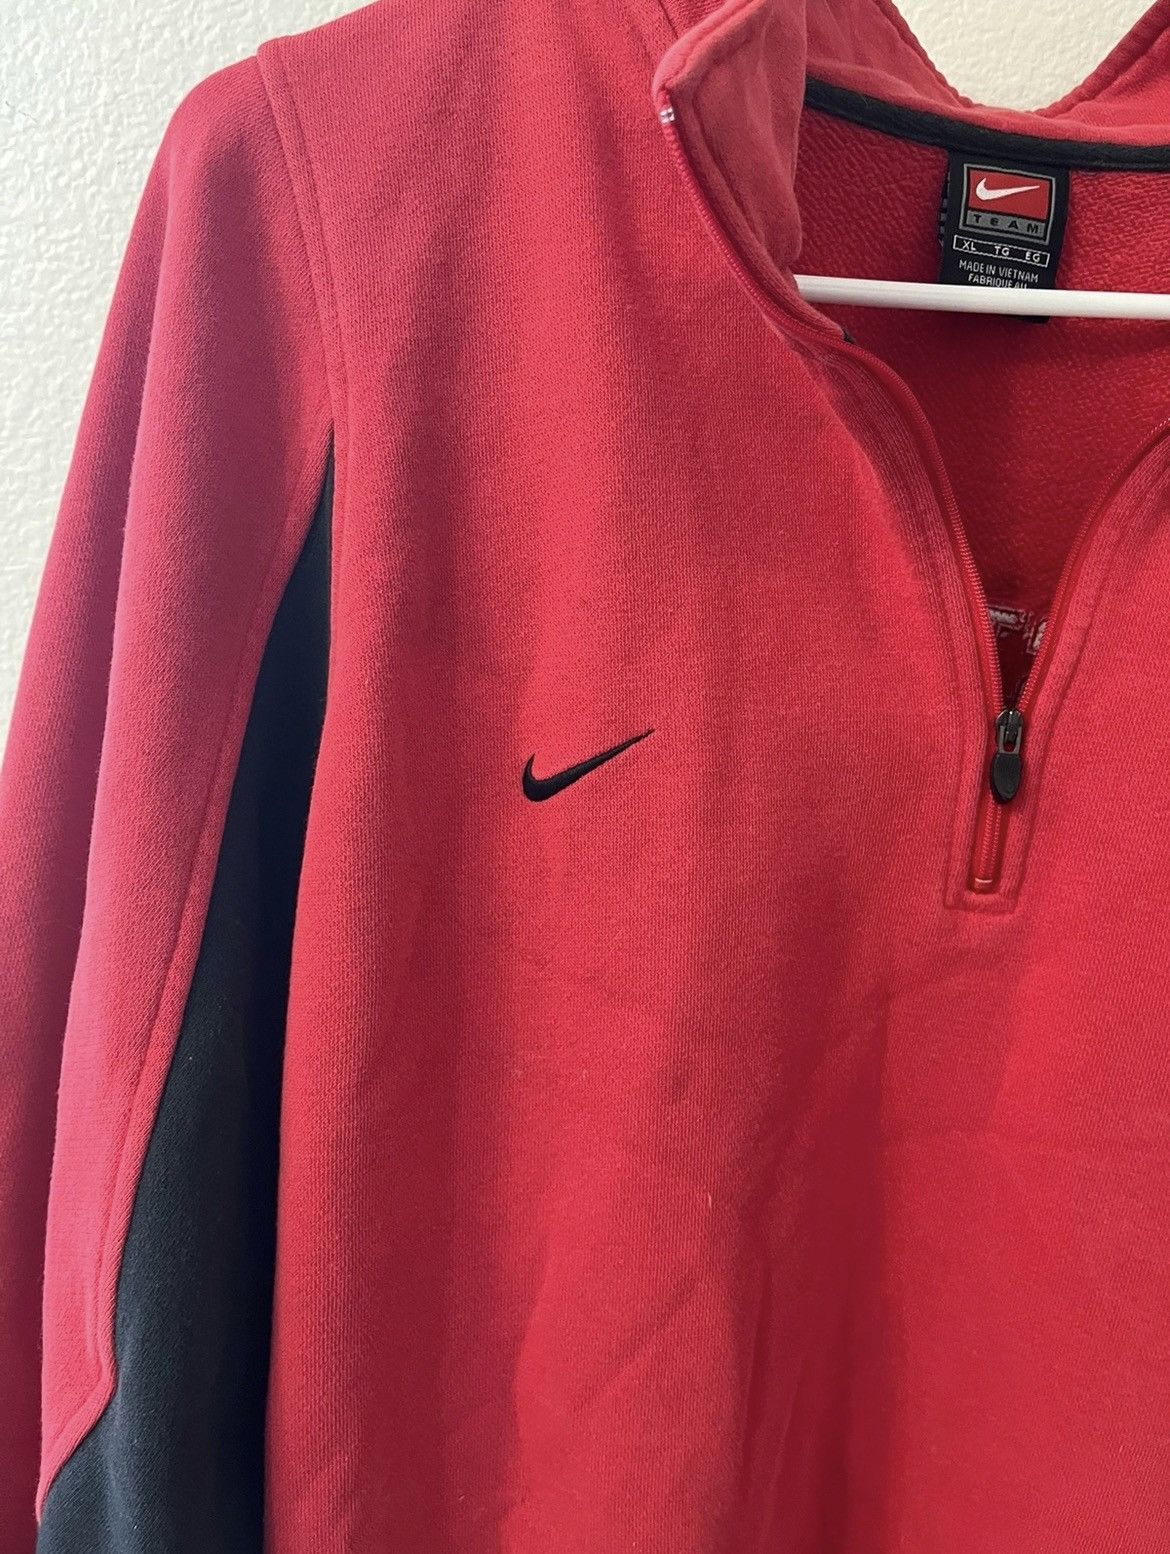 Nike Vintage Nike “Manchester United” Jacket Size US XL / EU 56 / 4 - 4 Thumbnail